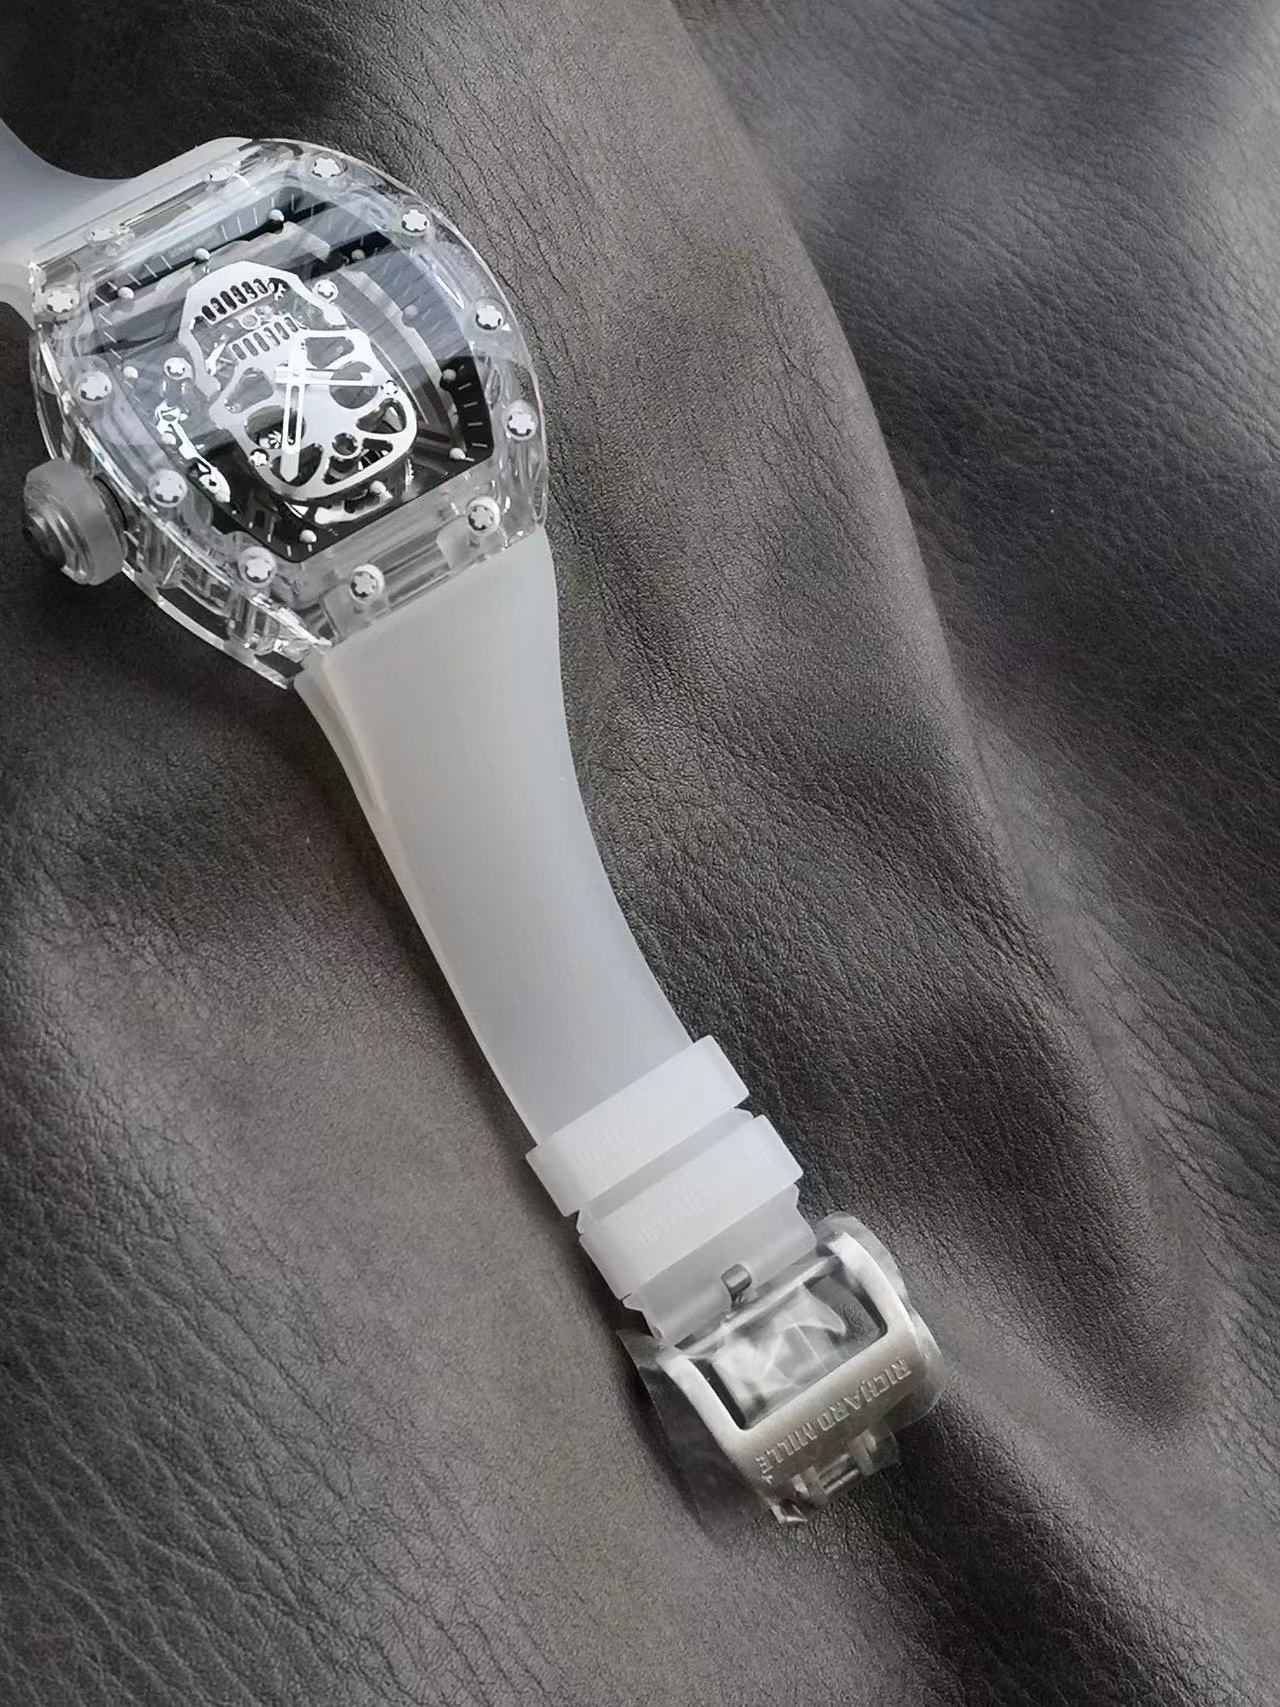 2024 MS Factory-Uhr RM27-03, spanischer Bullensaphirkristall, echtes Tourbillon-Uhrwerk, vollständig transparentes Gehäuse, Designeruhren